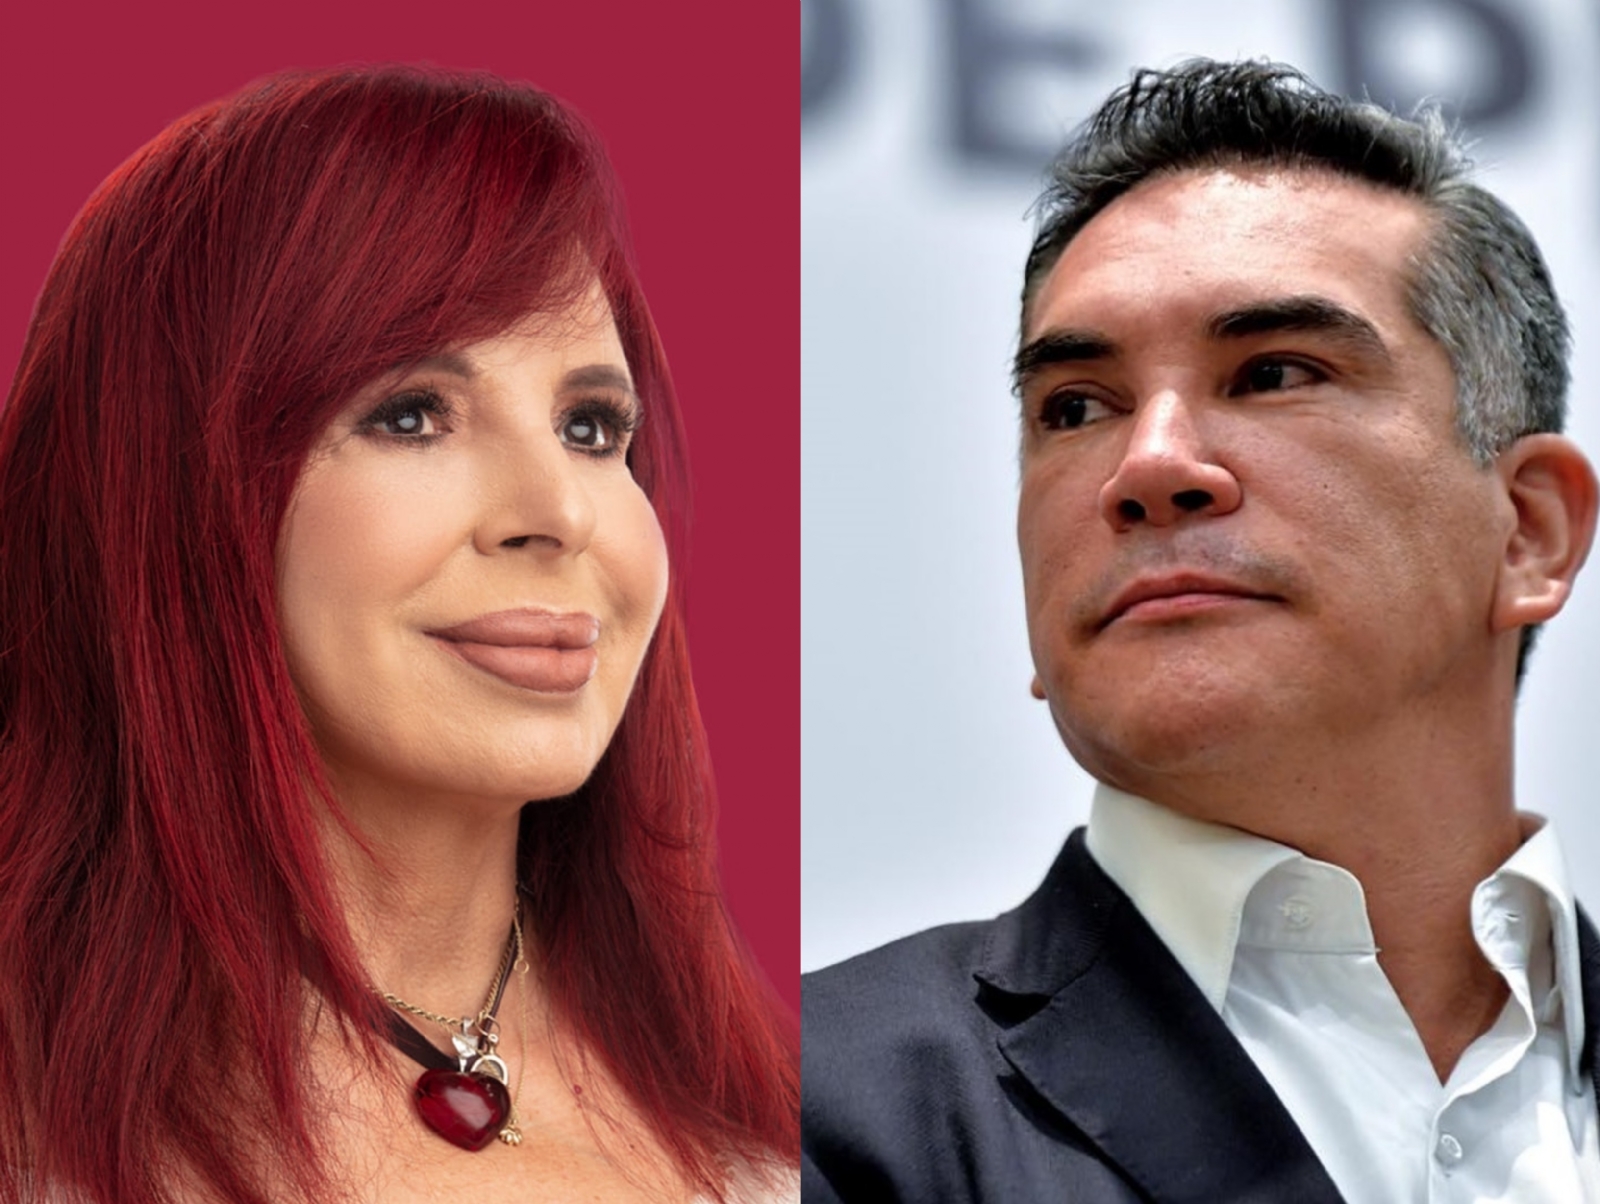 Layda Sansores vs 'Alito' Moreno: La guerra de audioescándalos en Campeche. Foto: Especial